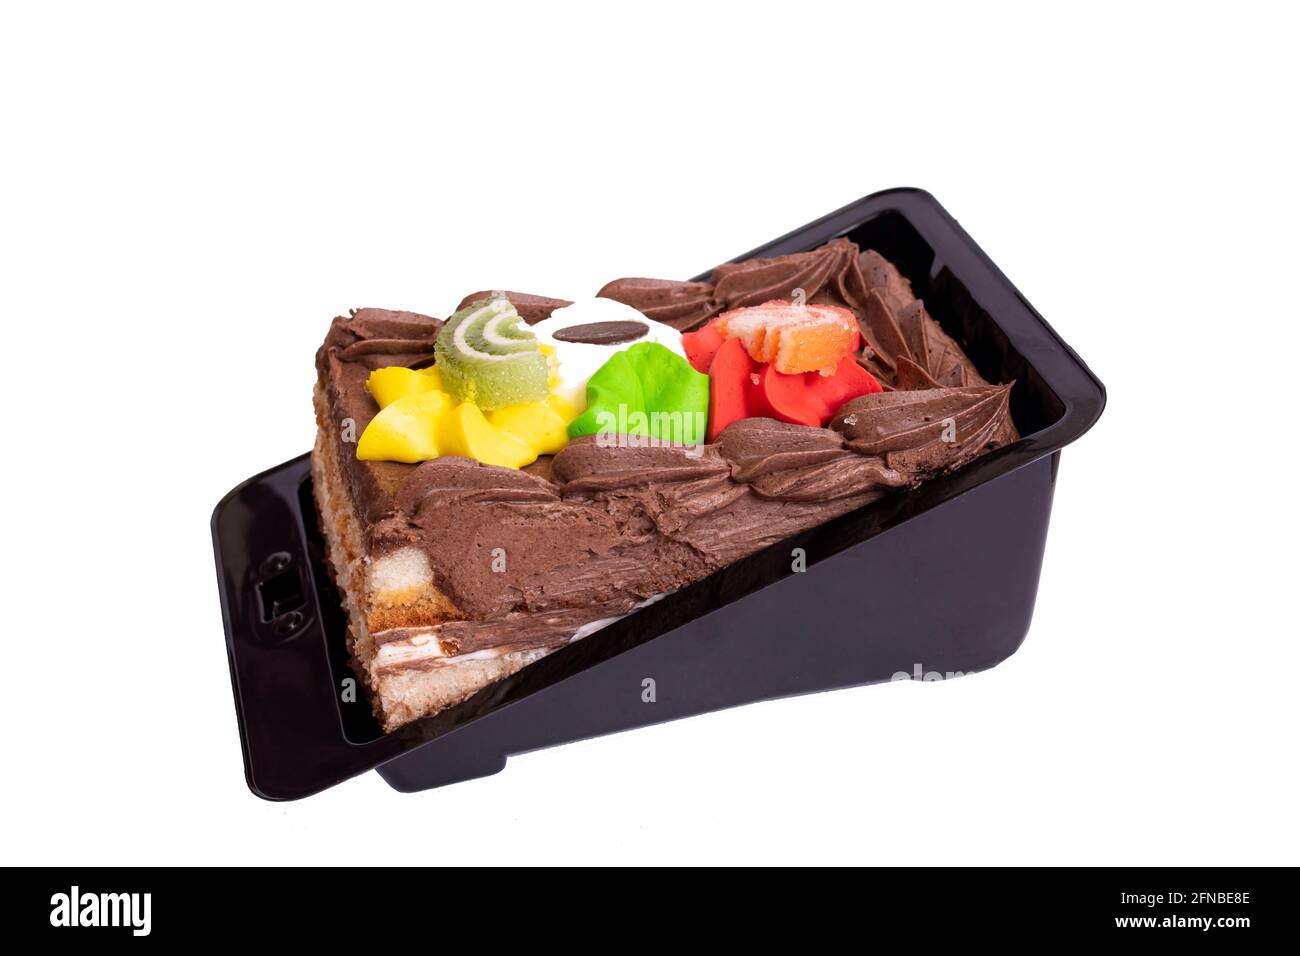 Chocolate cream cake isolated on white background close up Stock Photo